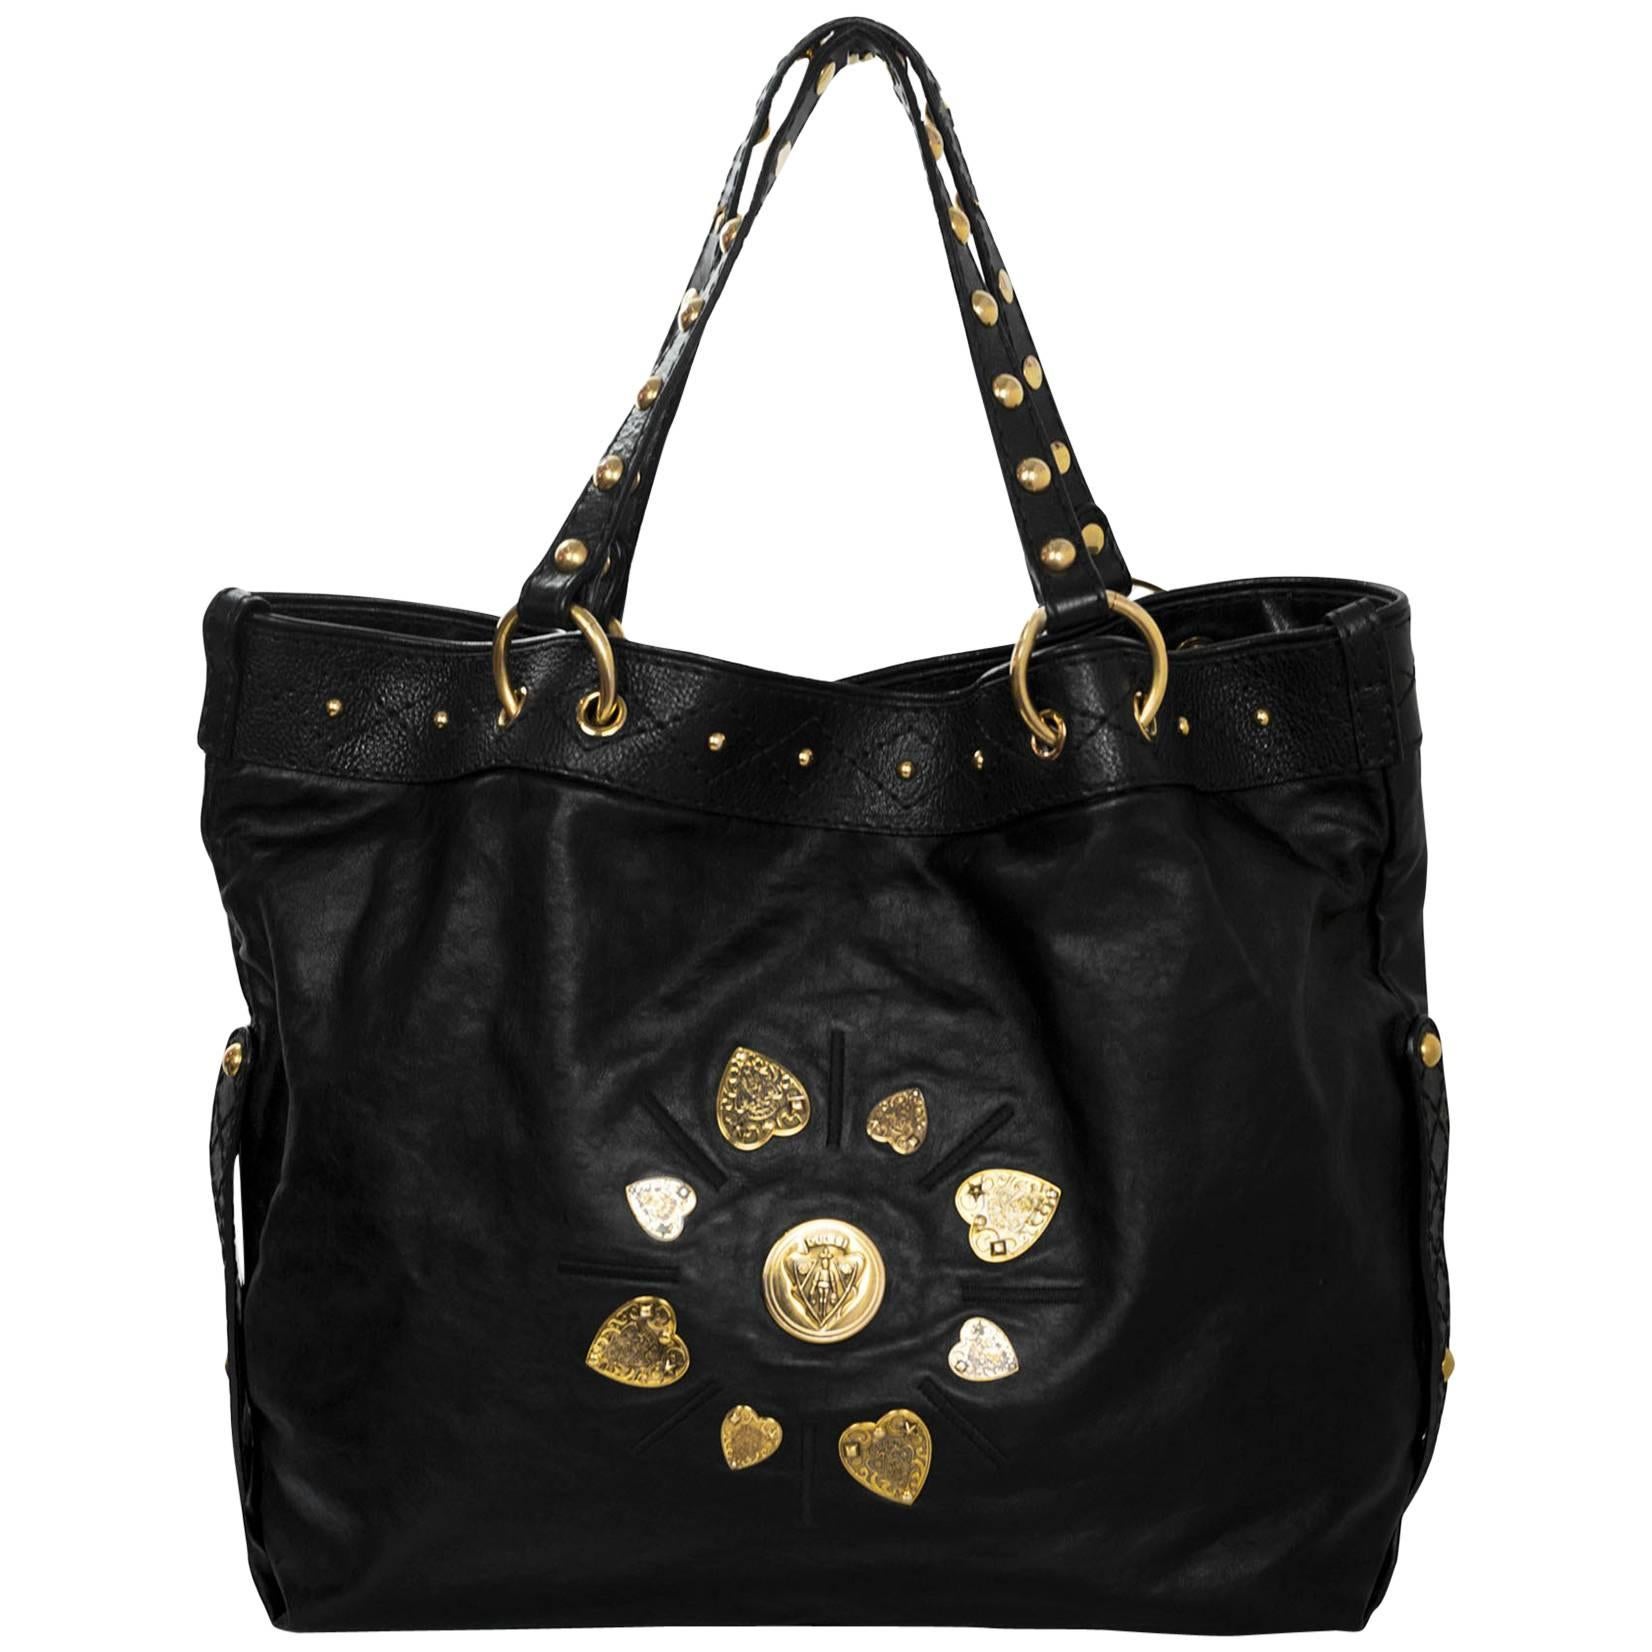 Gucci Black Leather Irina Hysteria Tote Bag